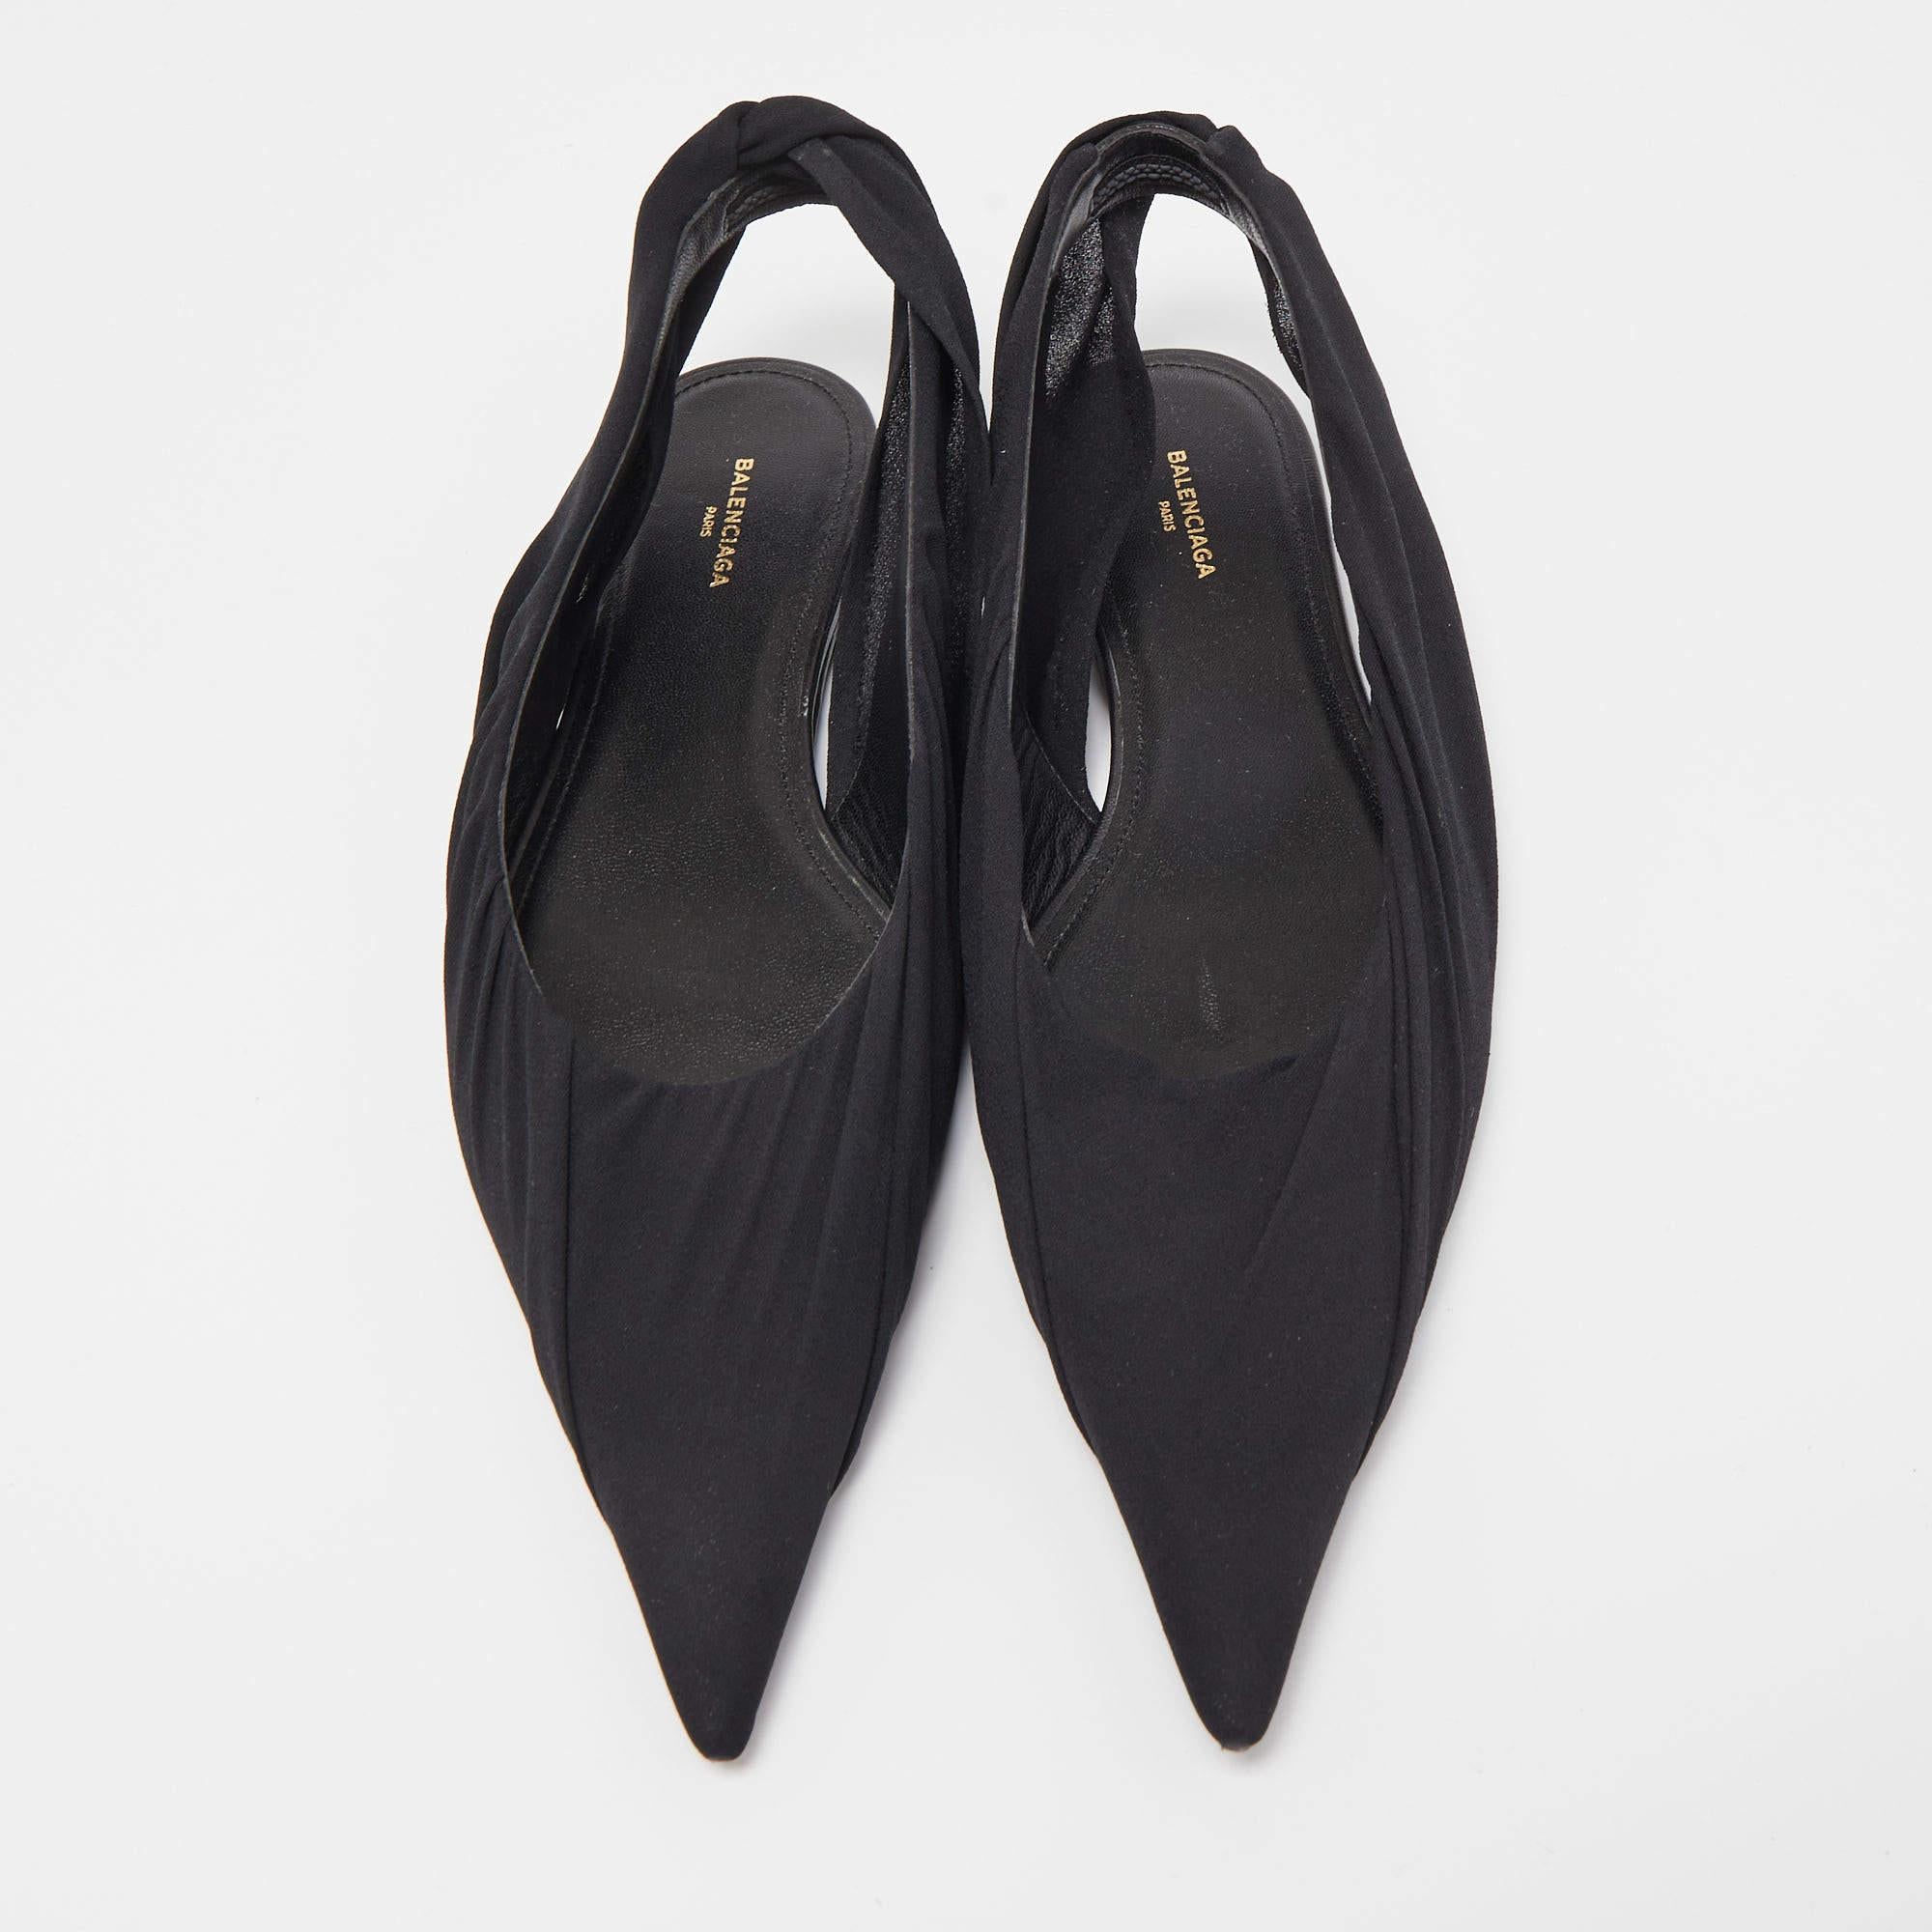 Les chaussures plates de Balenciaga sont des chaussures élégantes et polyvalentes. Fabrice en tissu noir épuré, ils présentent un bout pointu et une fine bride à l'arrière pour un look chic et minimaliste. Ces chaussures plates offrent confort et